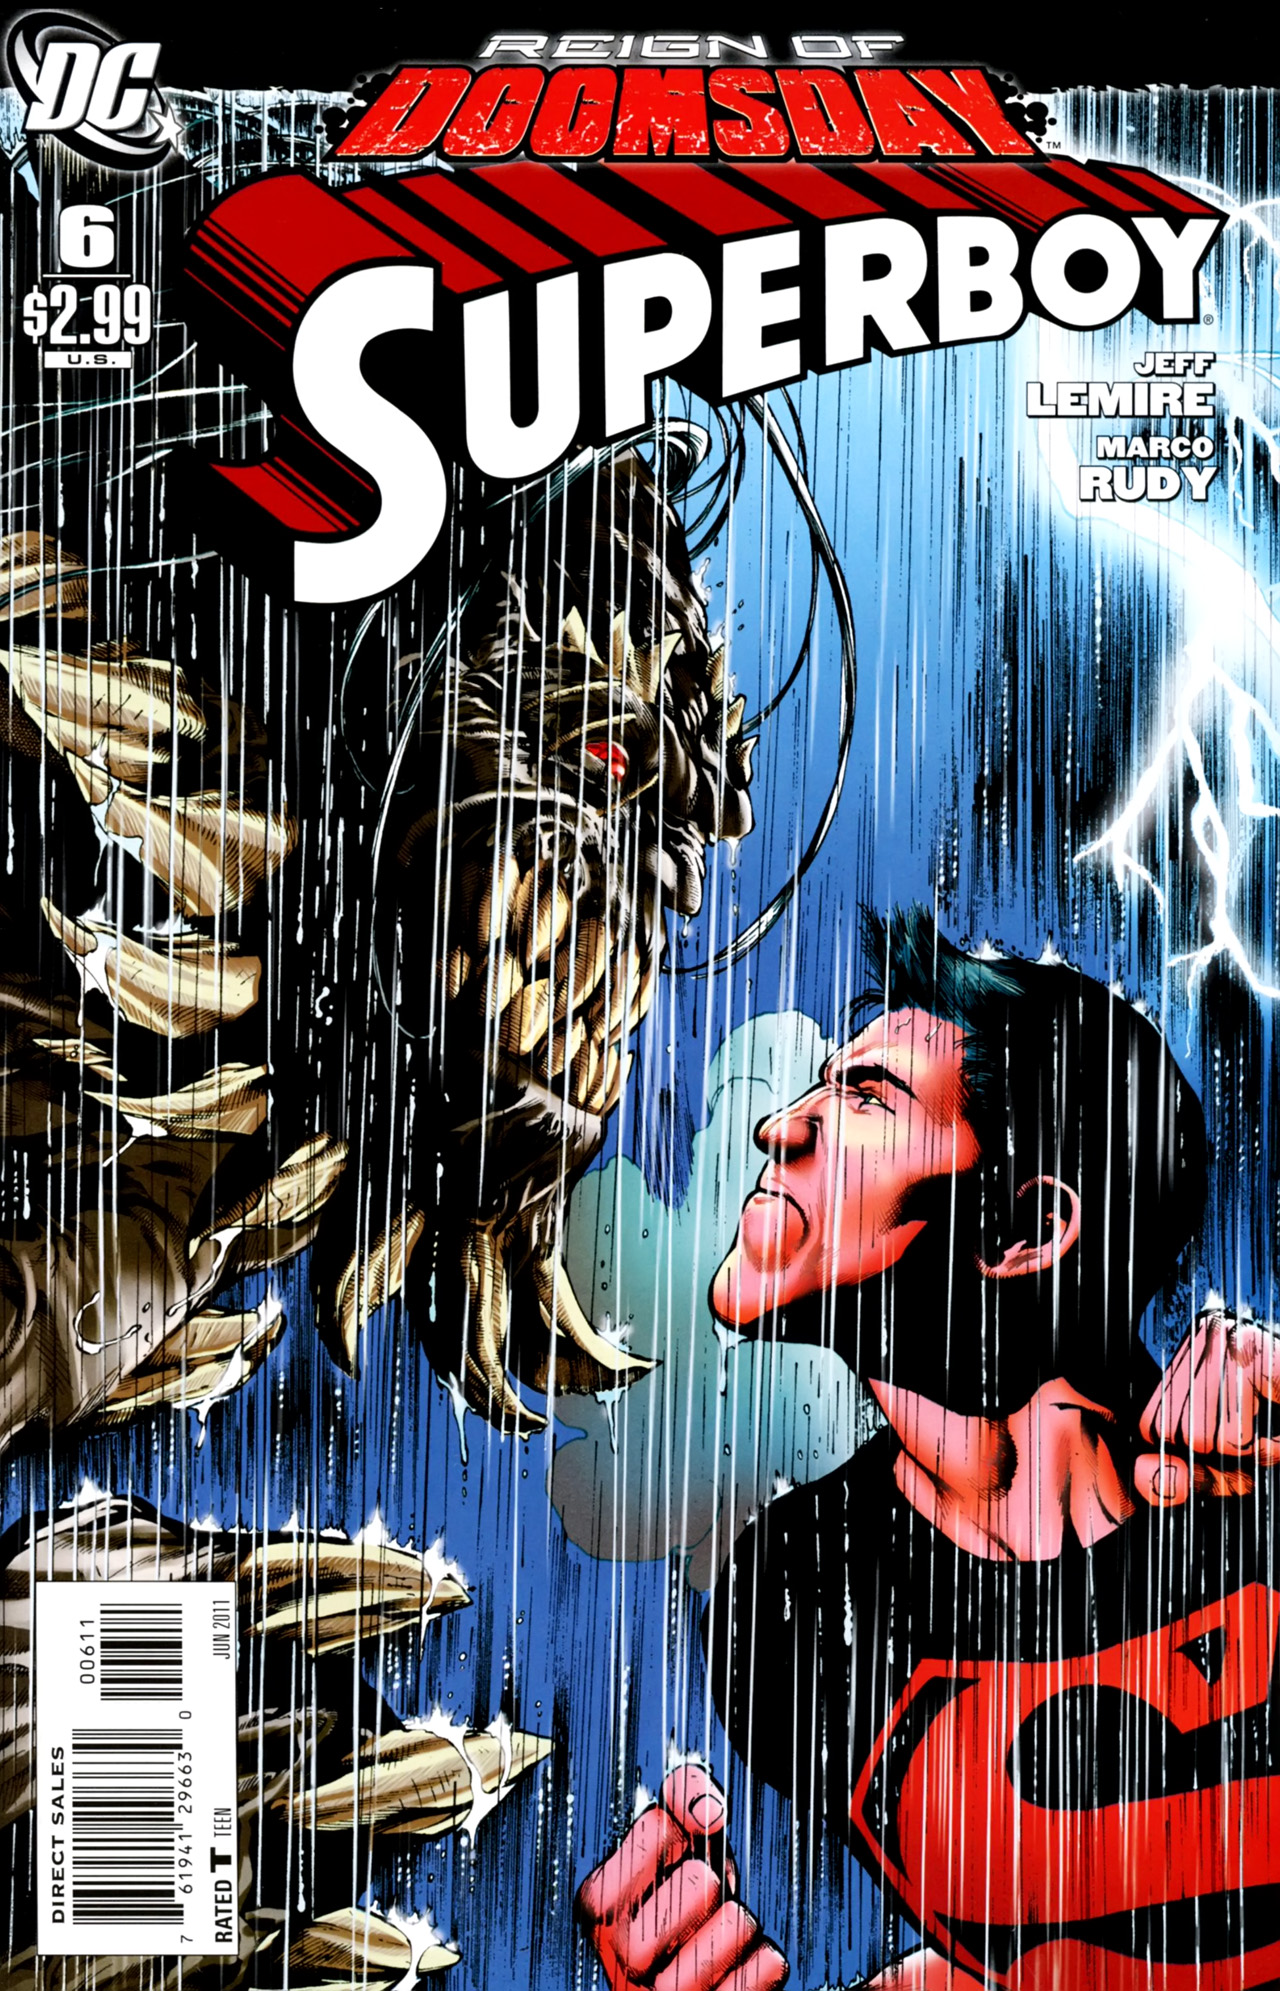 Superboy Vol. 5 #6